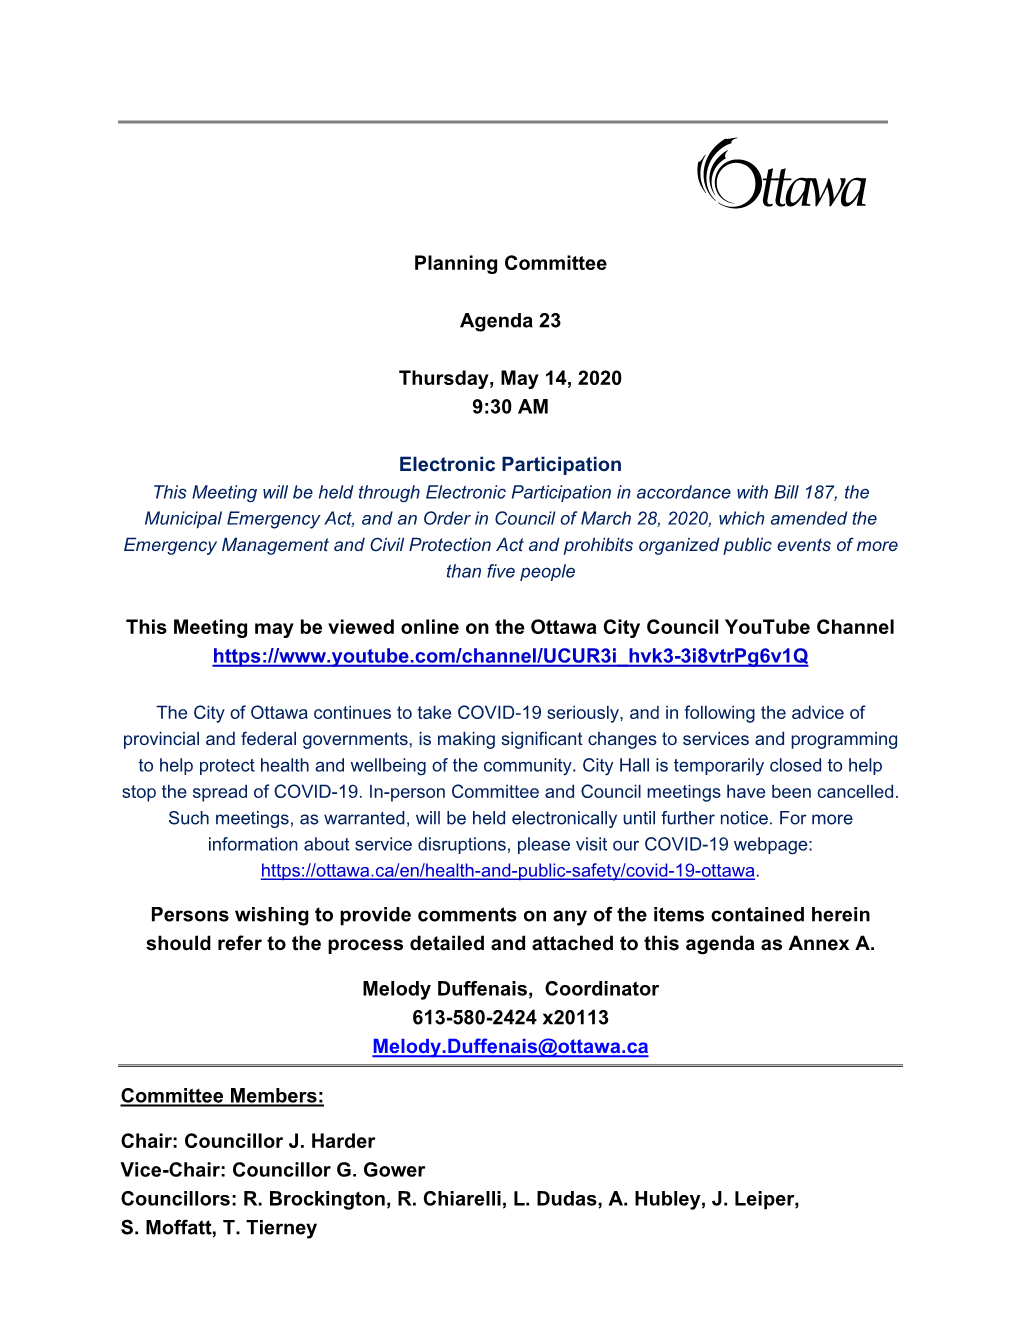 City of Ottawa Planning Committee Agenda